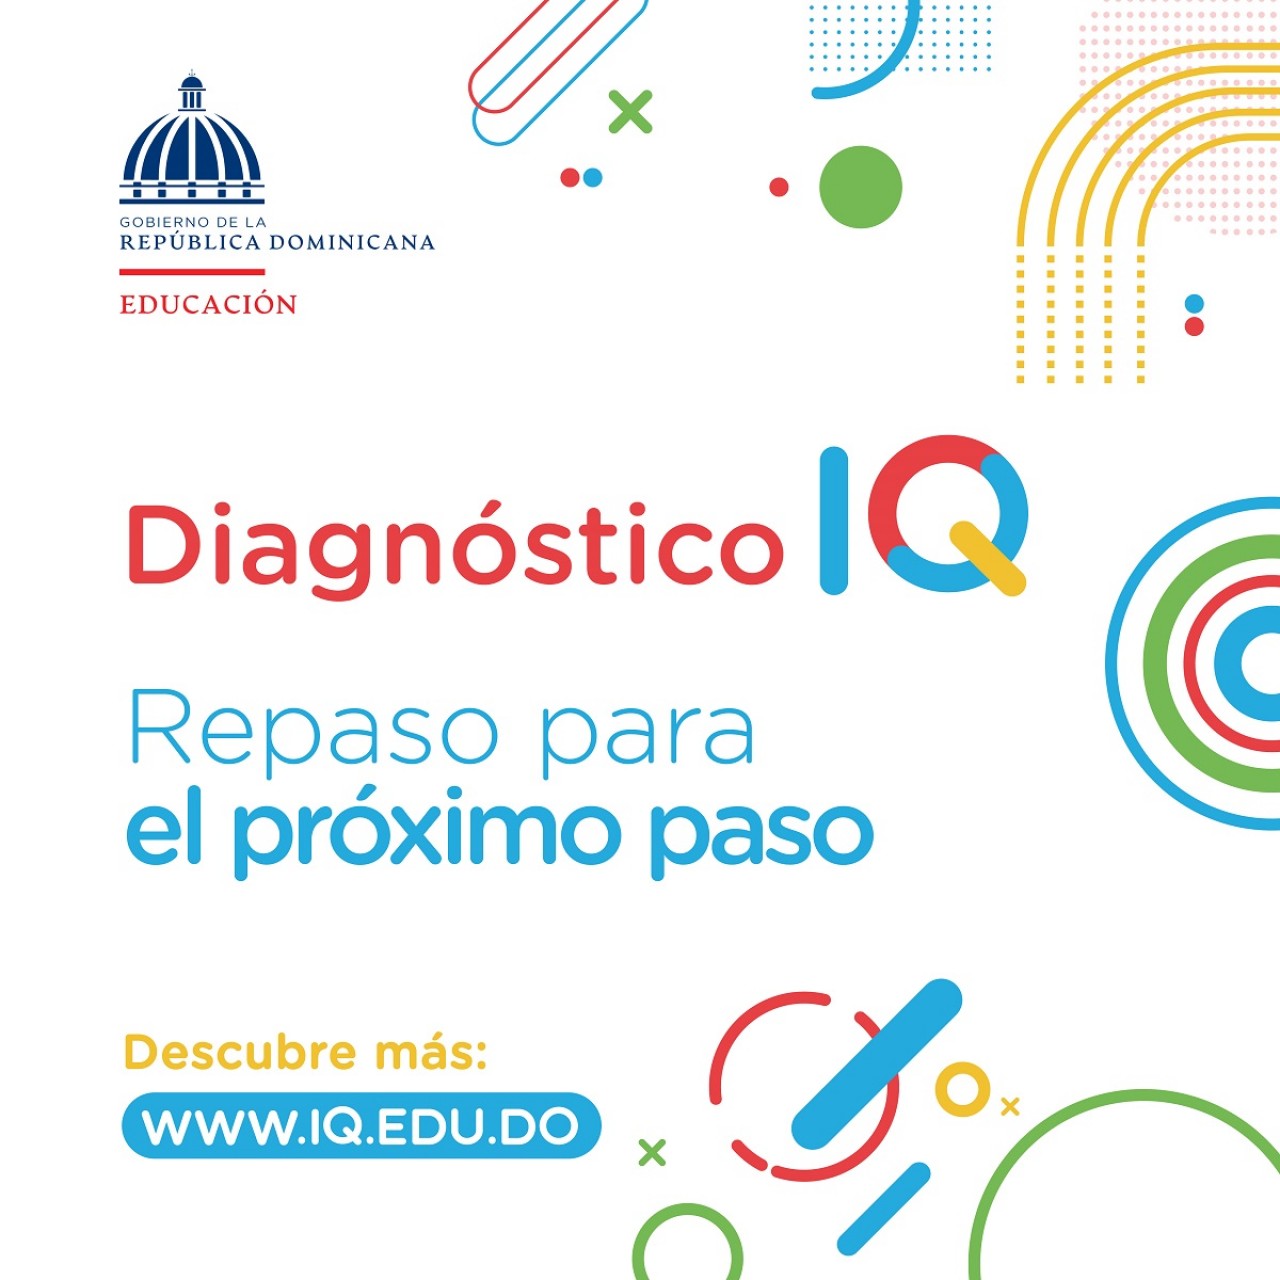  imagen Poster de herramienta de autoevaluación para las áreas curriculares de Lengua Española y Matemáticas a través de la plataforma IQ.EDU.DO. 